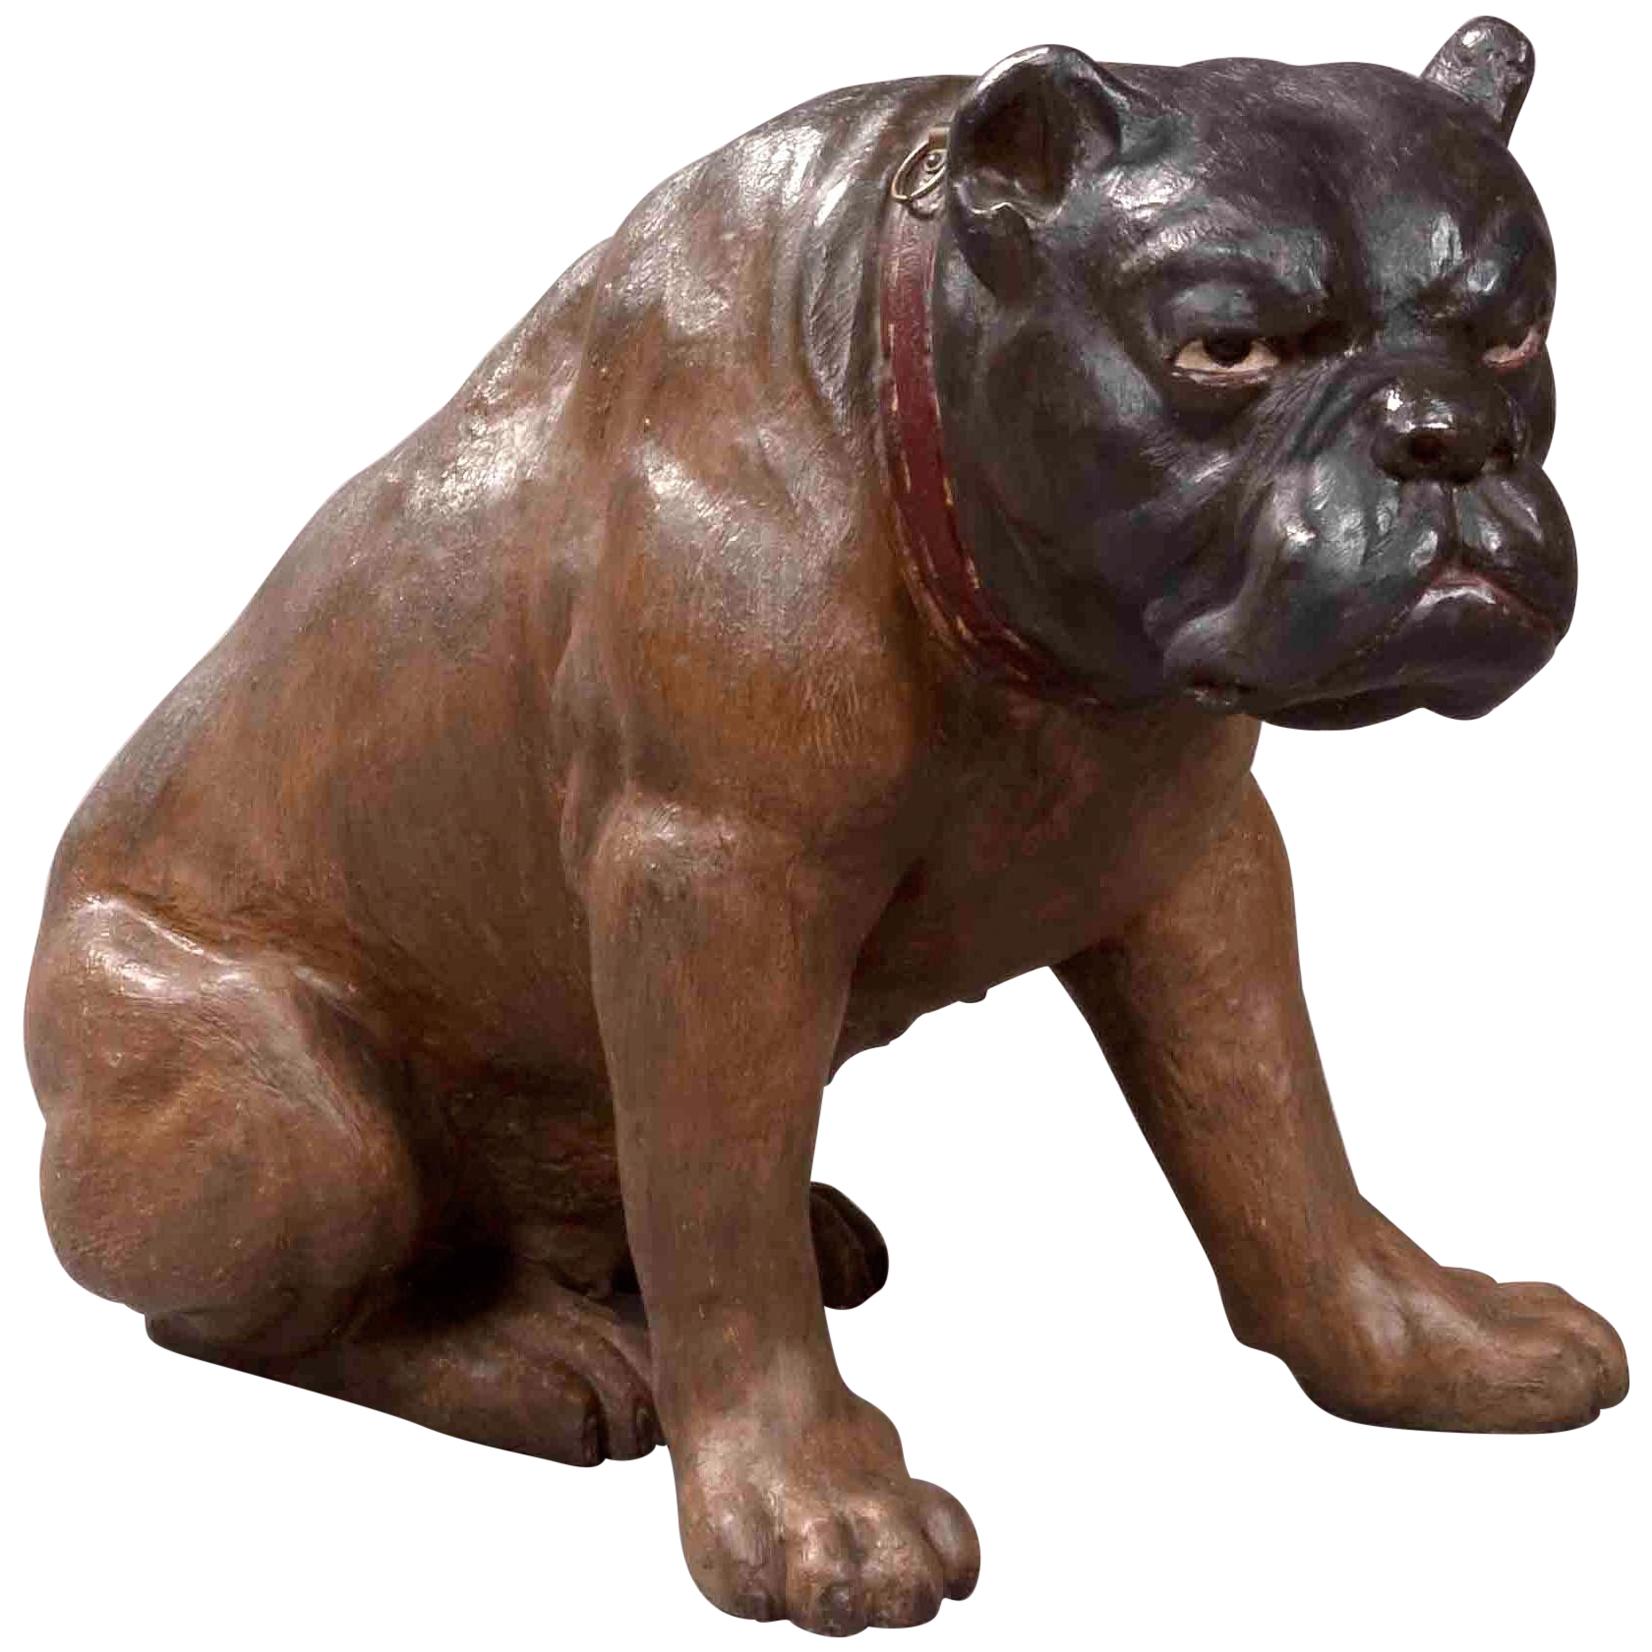 Antike österreichische lebensähnliche Figur einer sitzenden braunen englischen Bulldogge